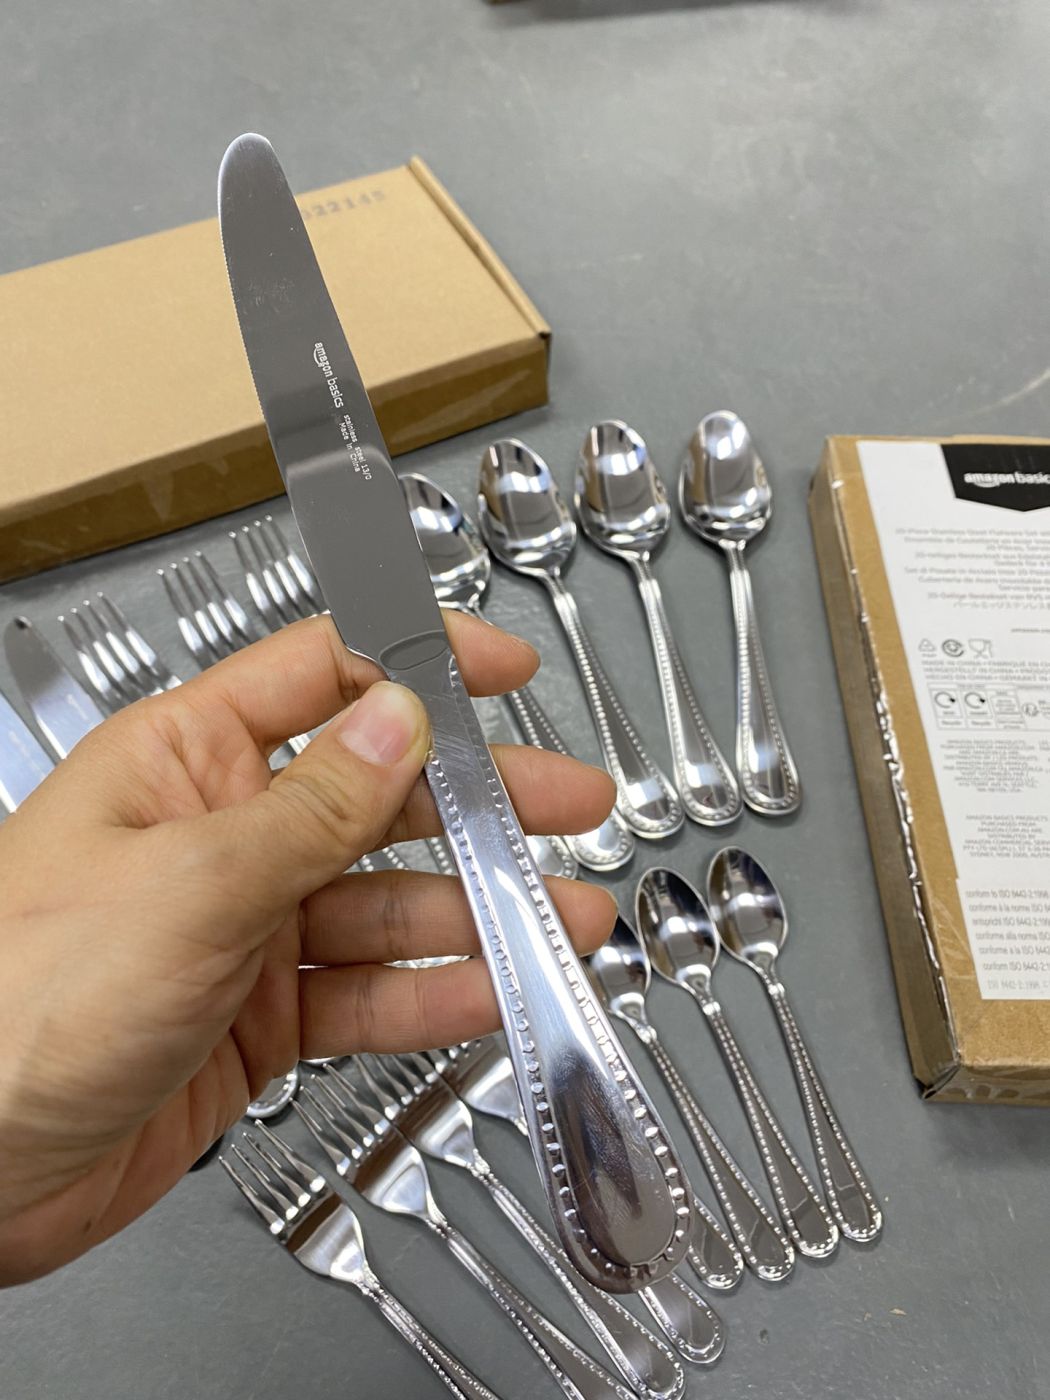 Bộ dao , thìa , dĩa 20 món chính hãng Amazon Basics Mỹ Model : B07GKFRJPZ